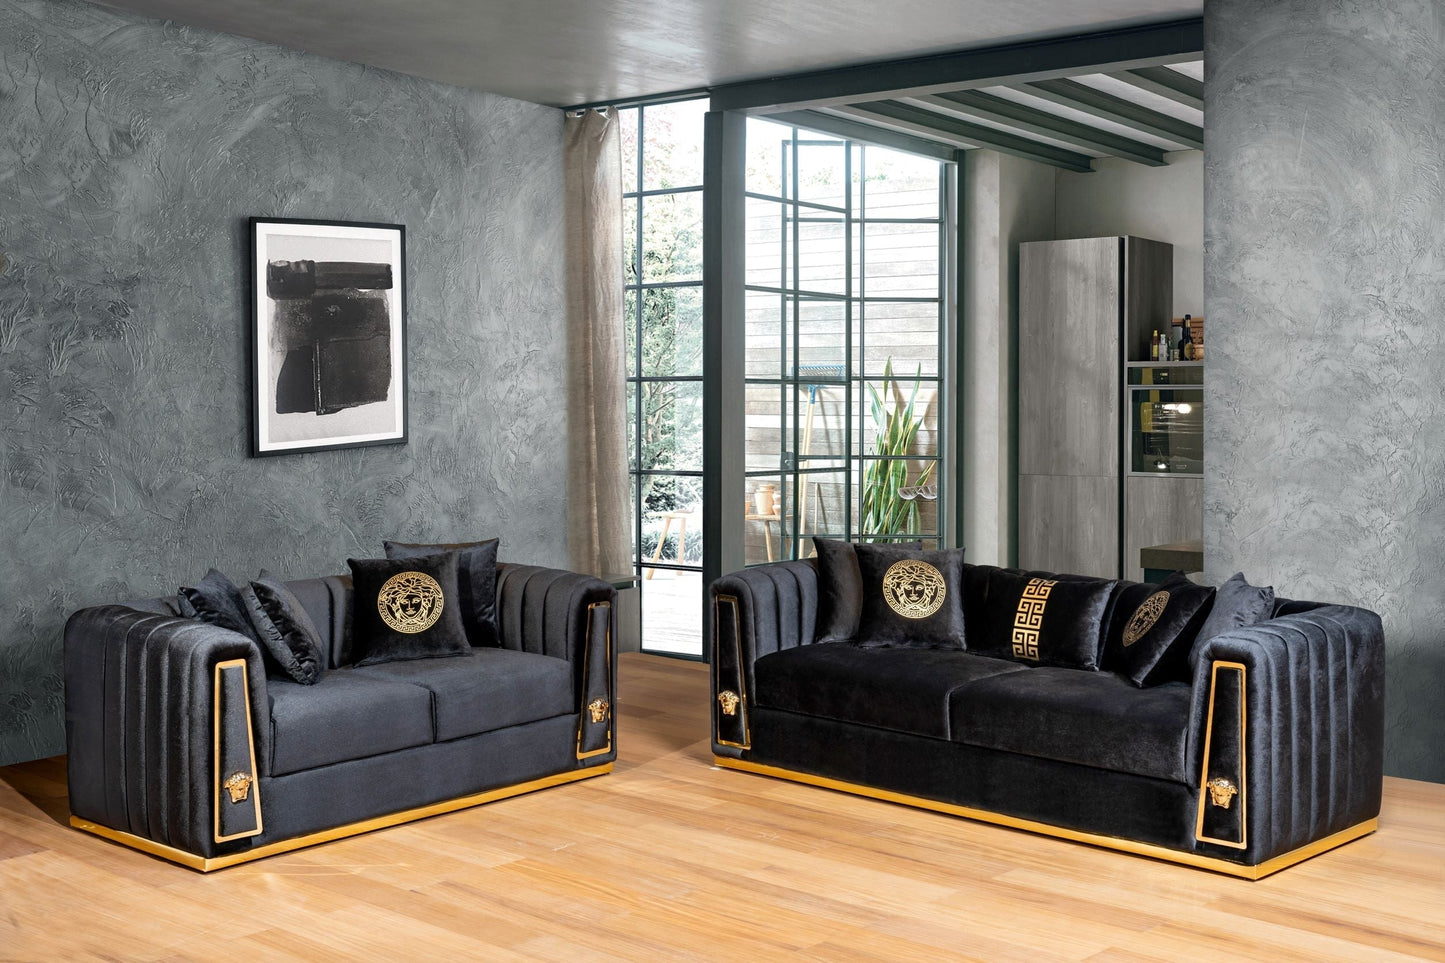 Royal Sofa & Loveseat Velvet Upholstery - Burgundy